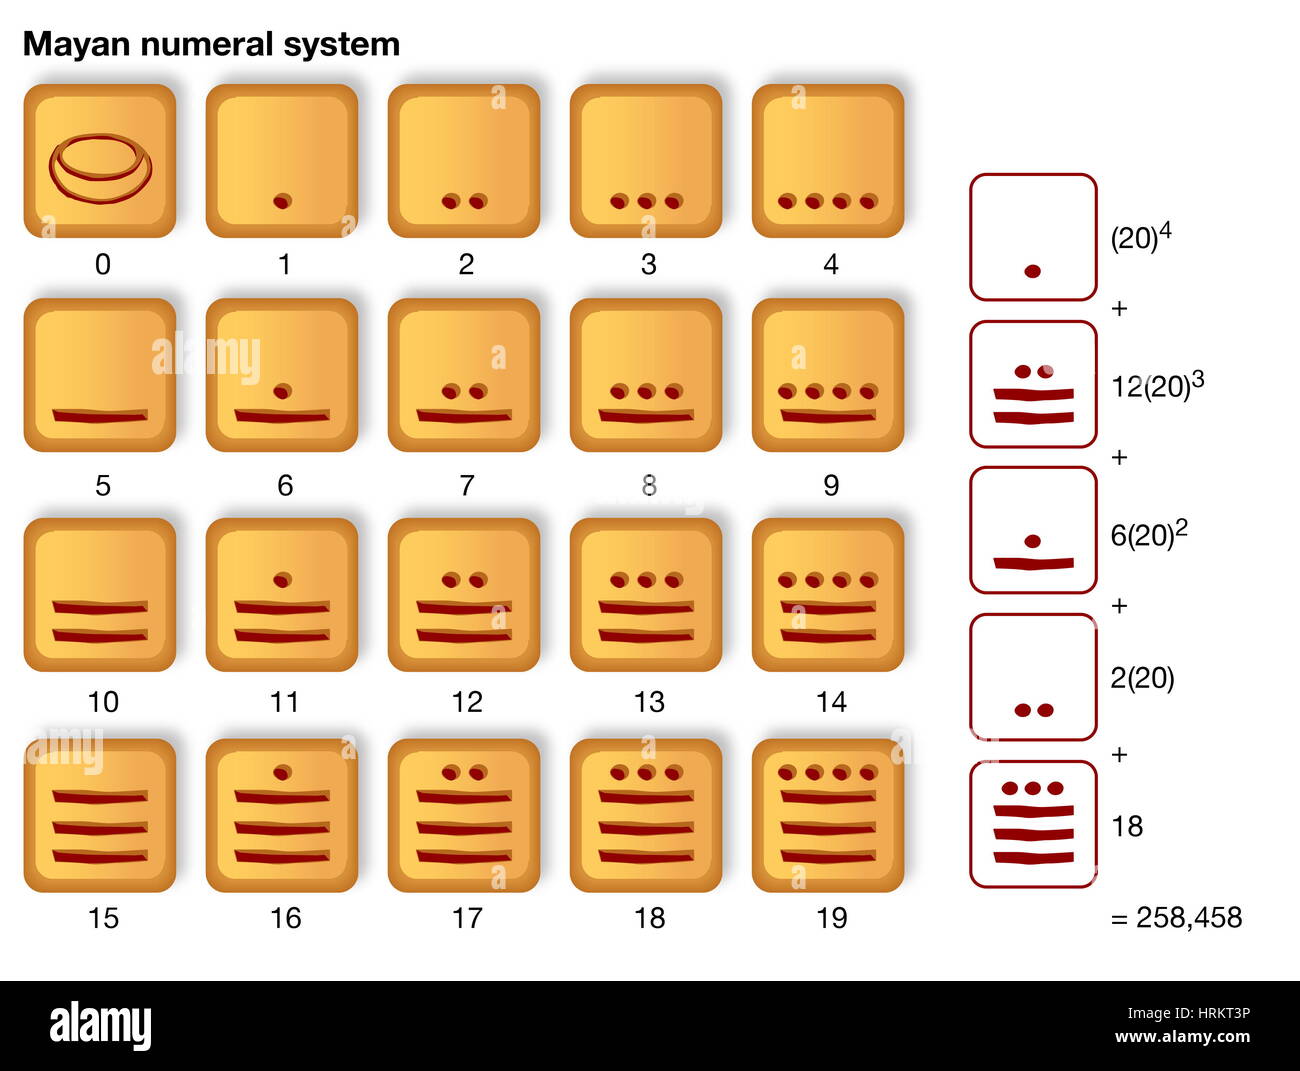 Il numero Maya sistema, che è la base 20 con semplice raggruppamento di base 5. Numeri e sistemi numerali Foto Stock